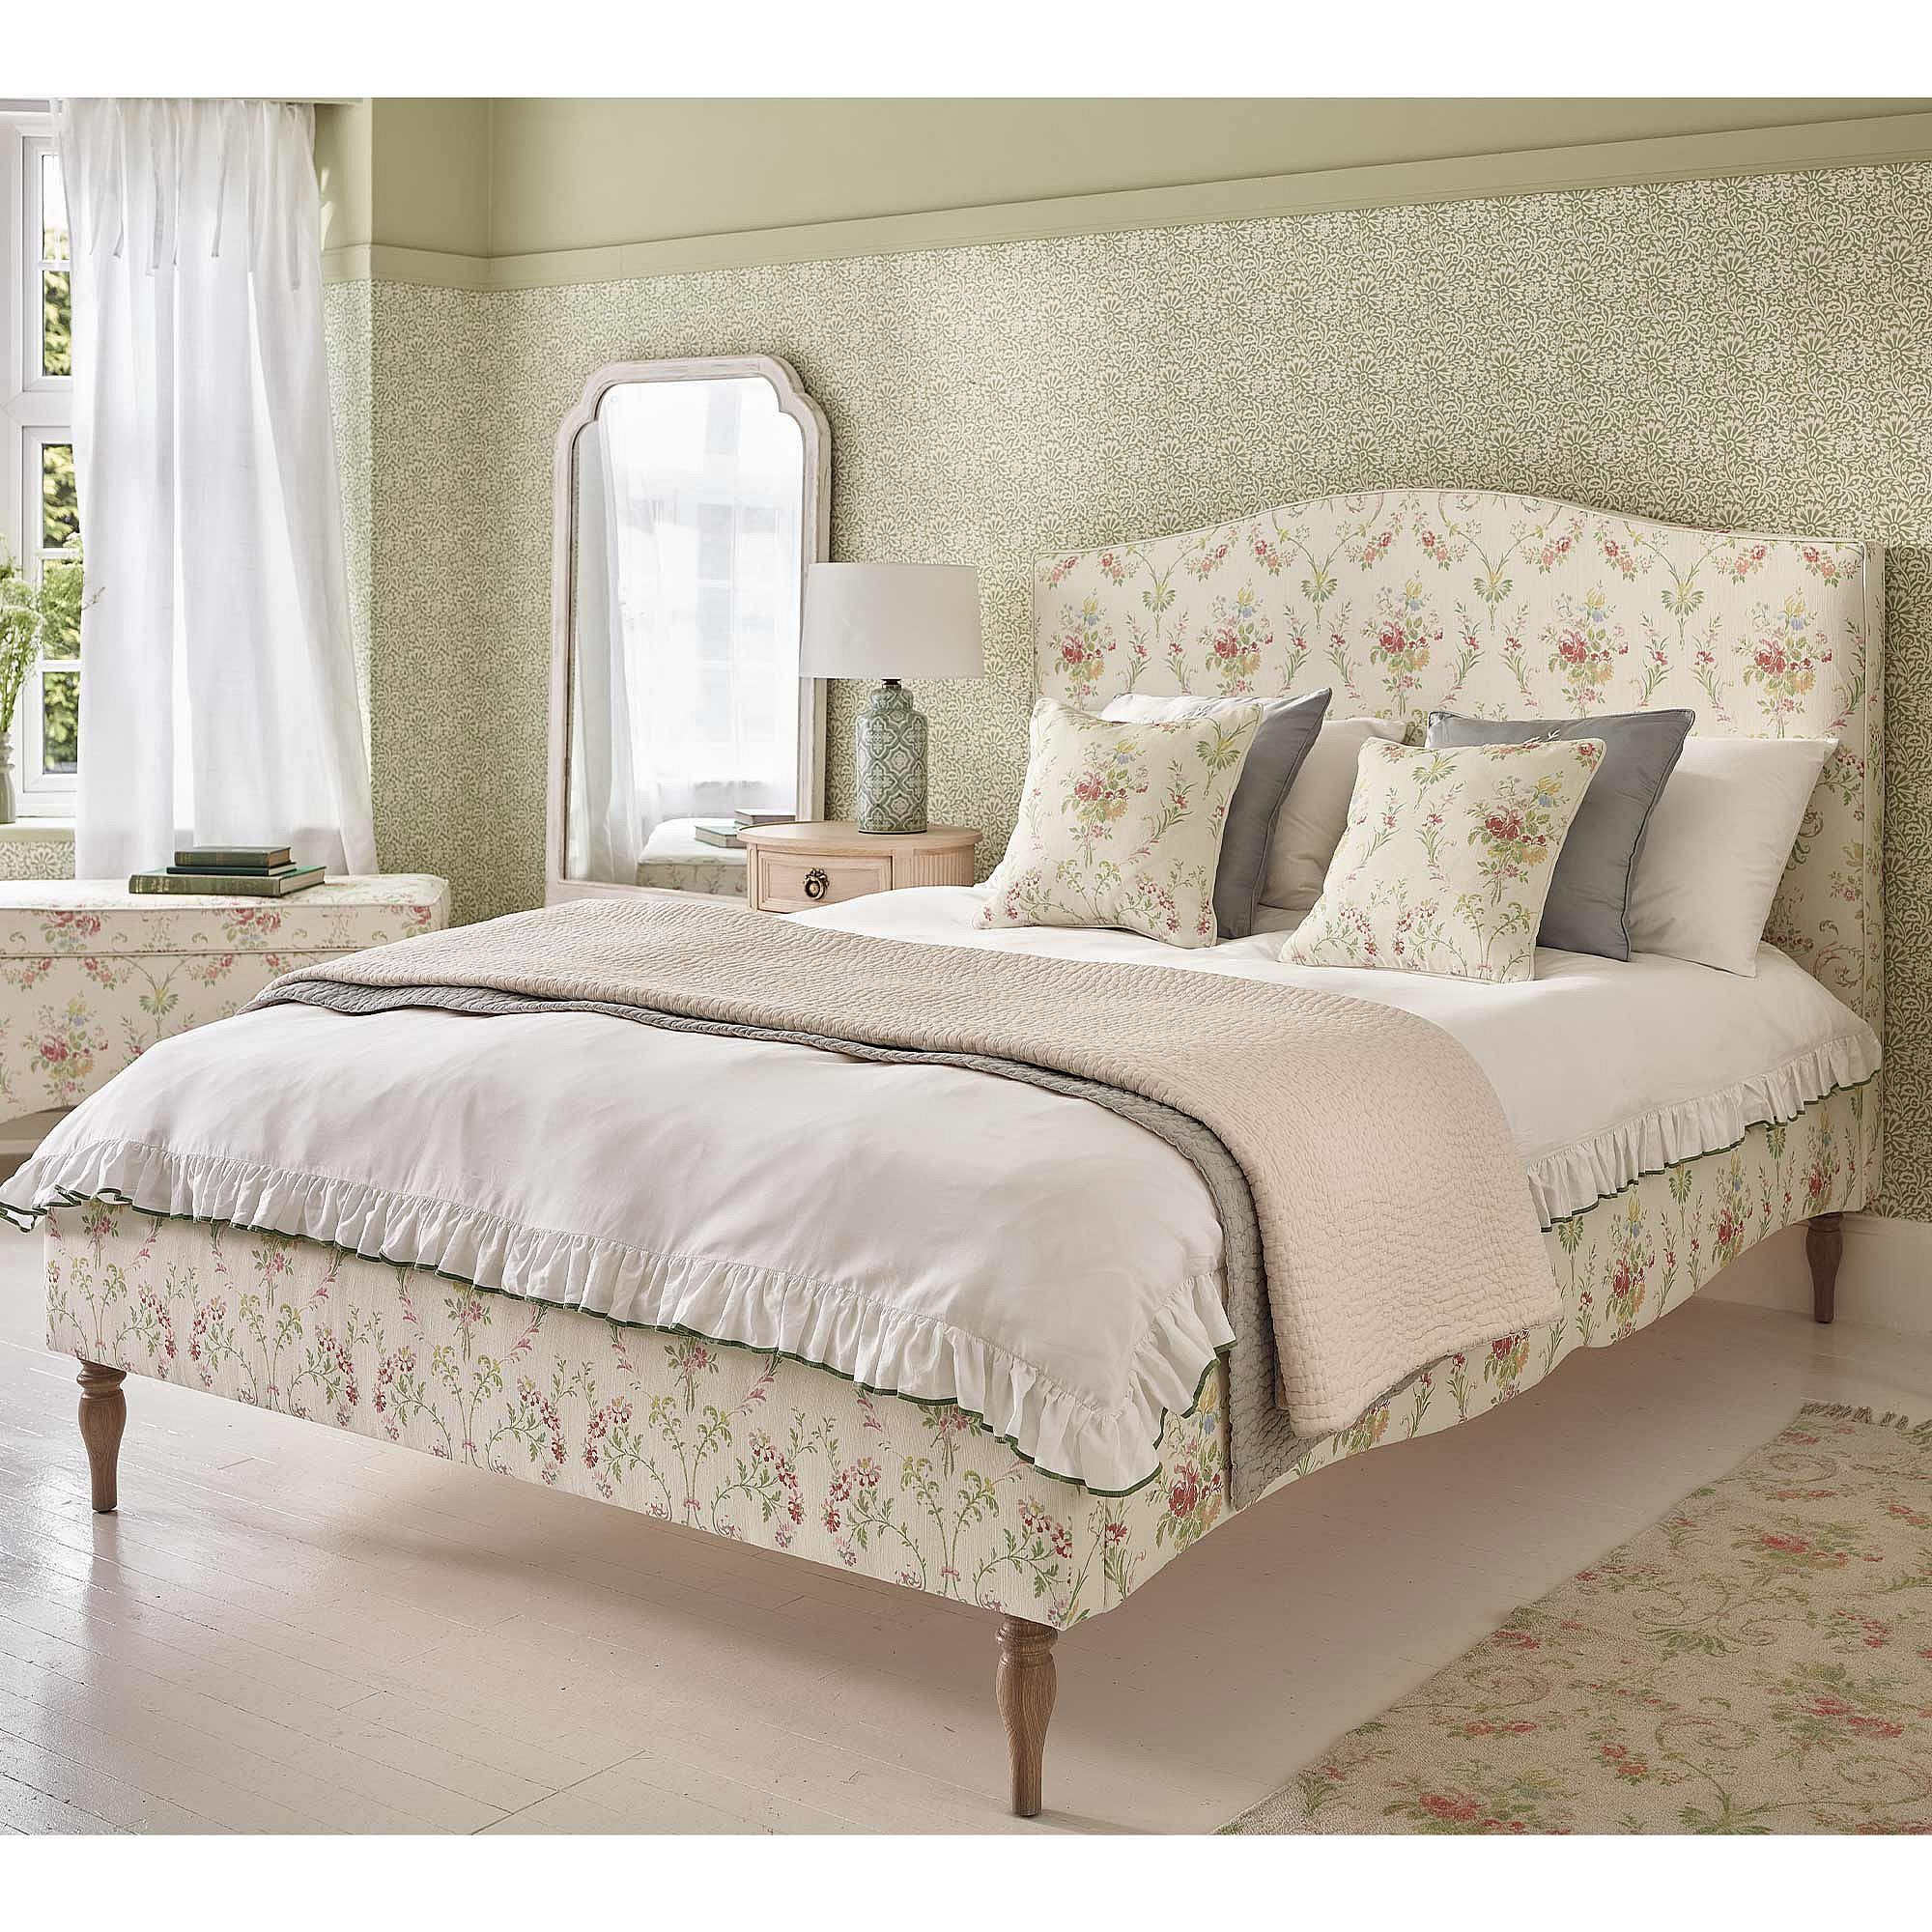 Windsor Garden Floral Upholstered Bed (Super King Size Bed) - image 1